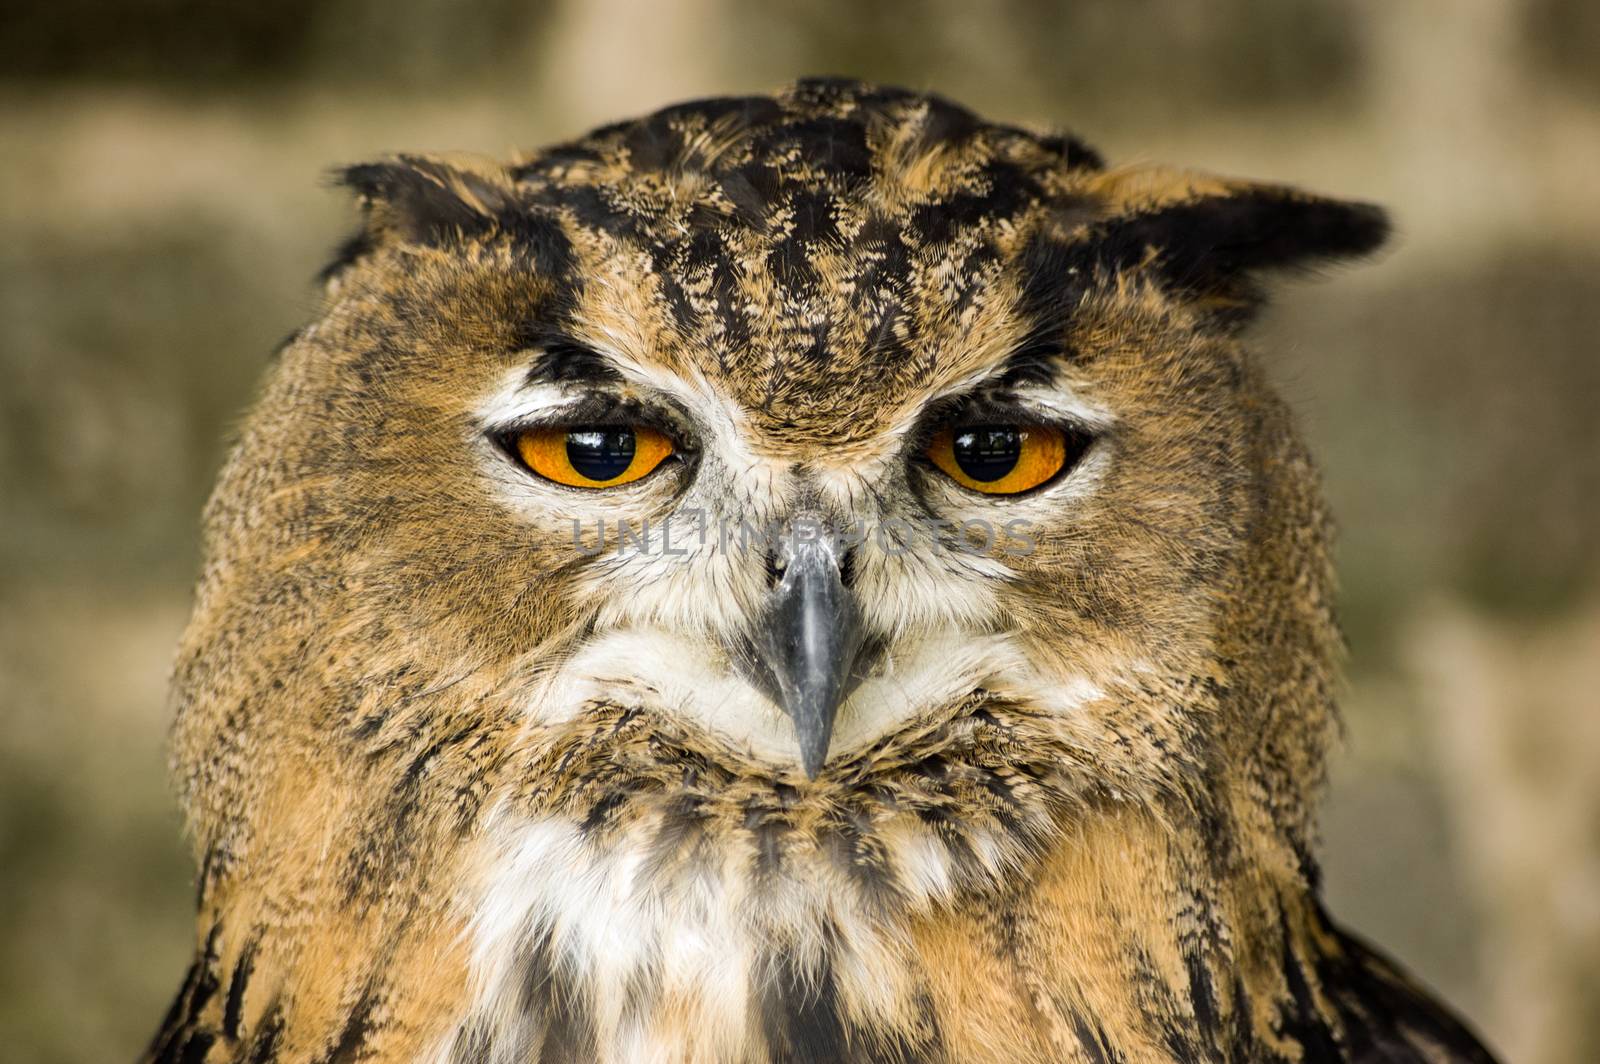 Eurasian Eagle Owl head on by BasPhoto